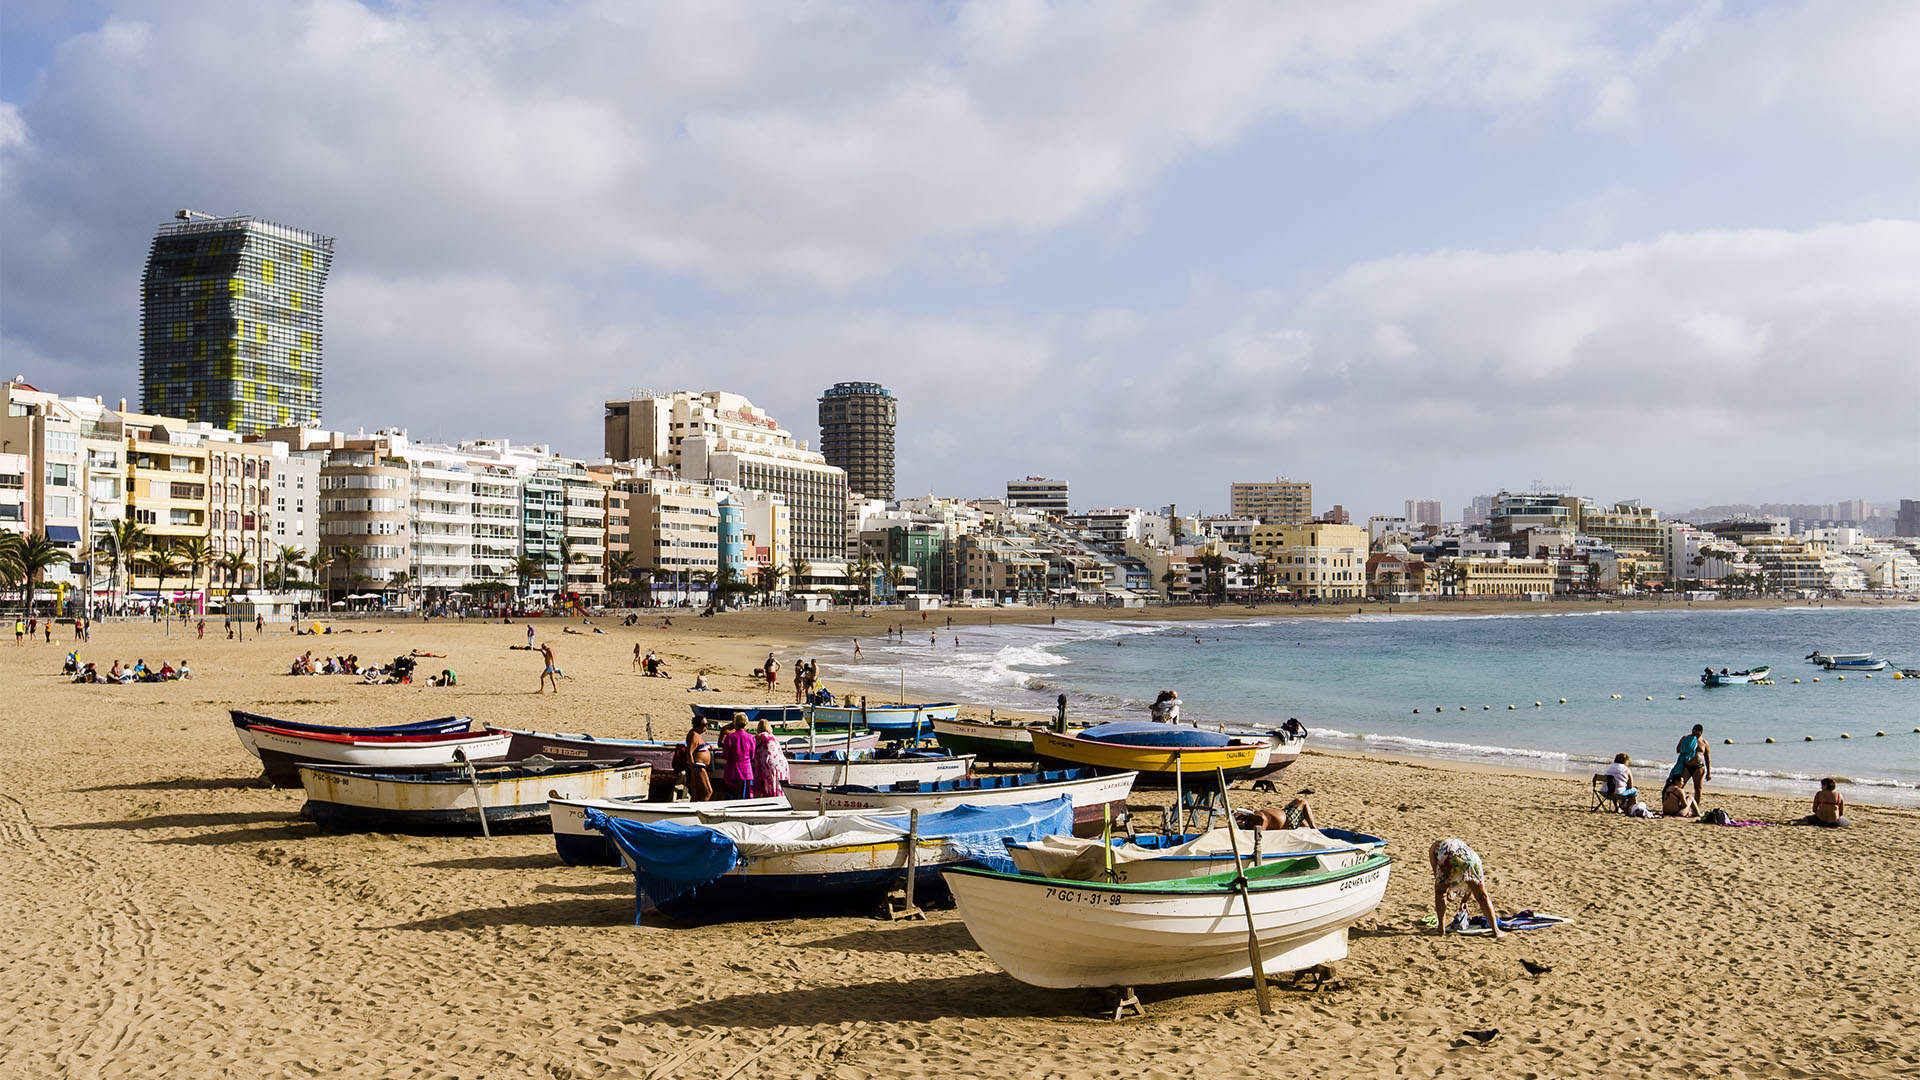 Der Stadtstrand Playa de las Canteras – Las Palmas de Gran Canaria.